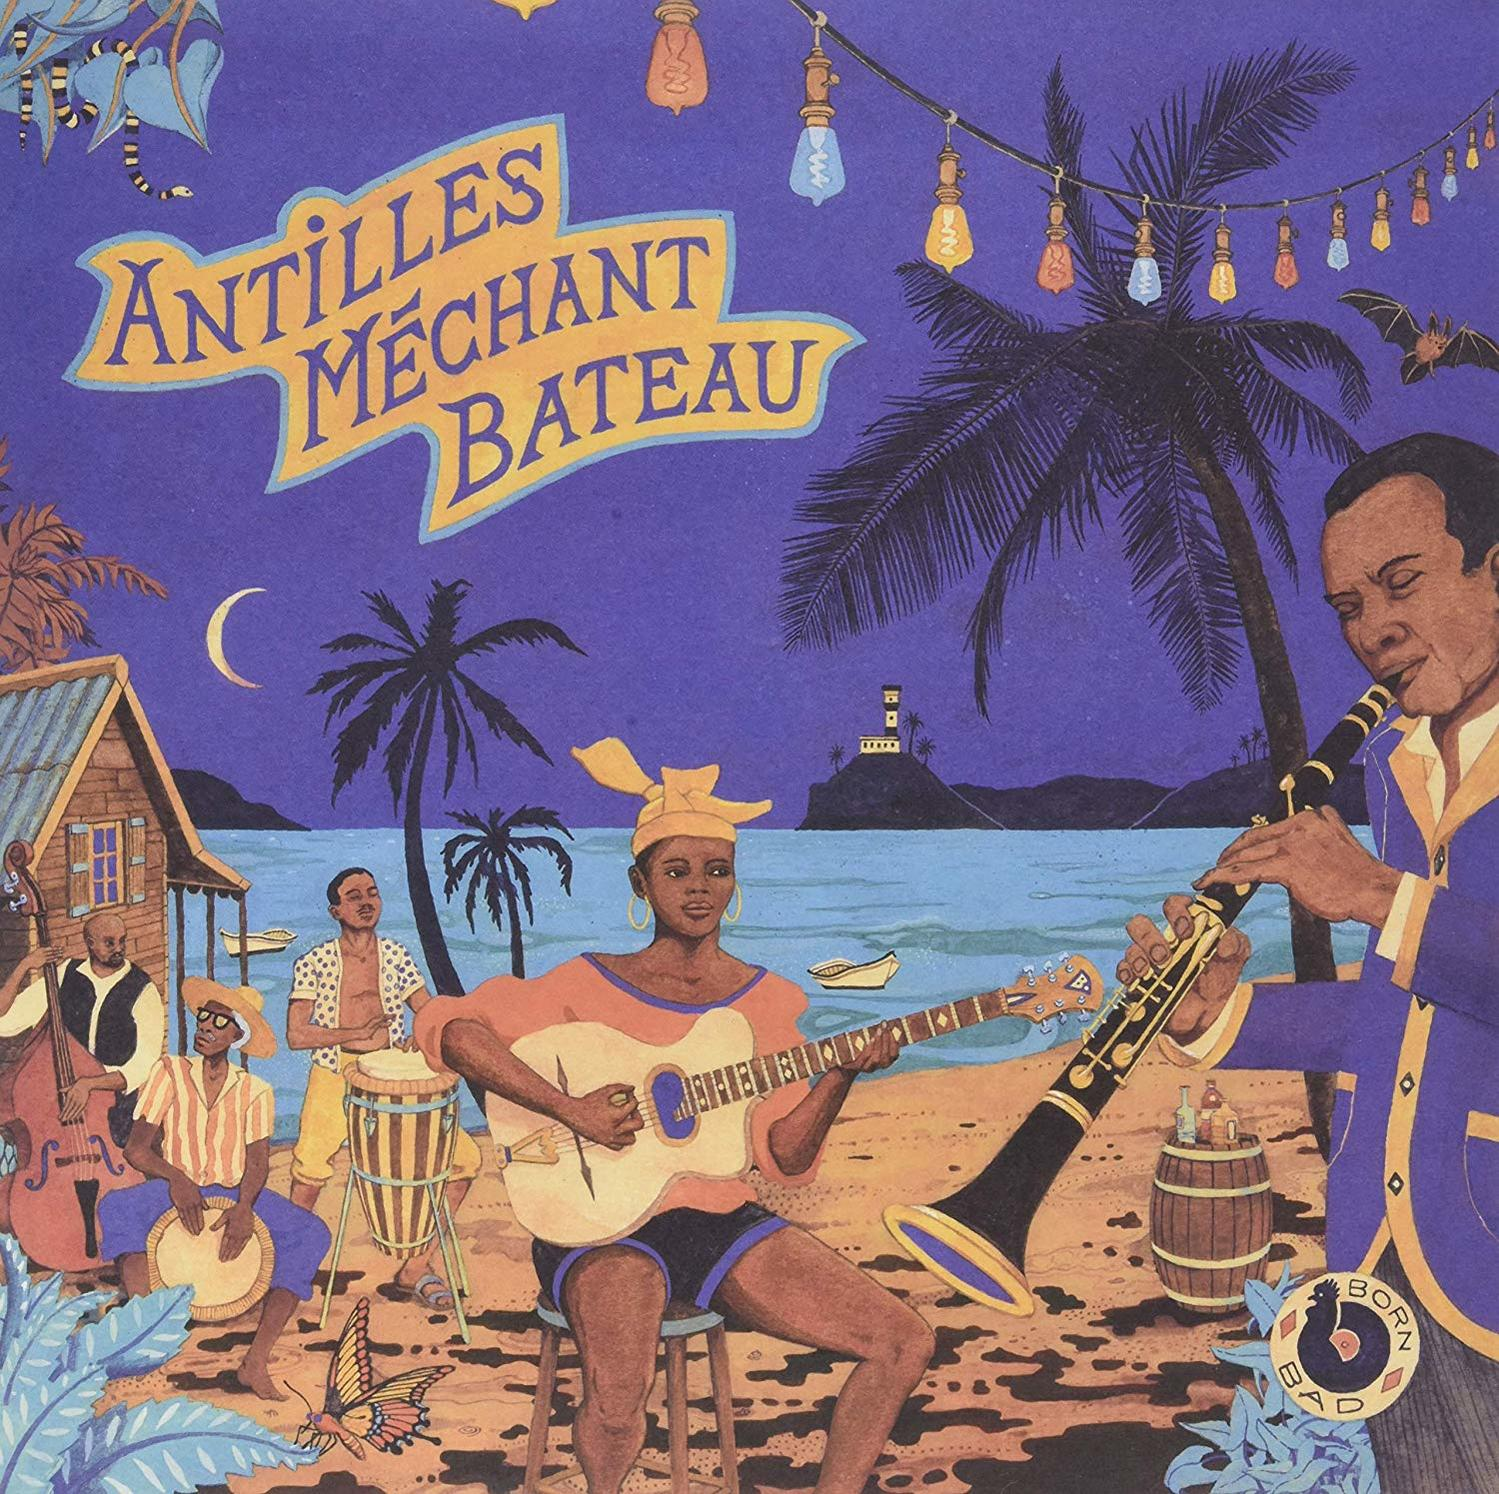 VARIOUS - Antilles Ka Gwo (CD) - Biguines Mechant Bateau-Deep 